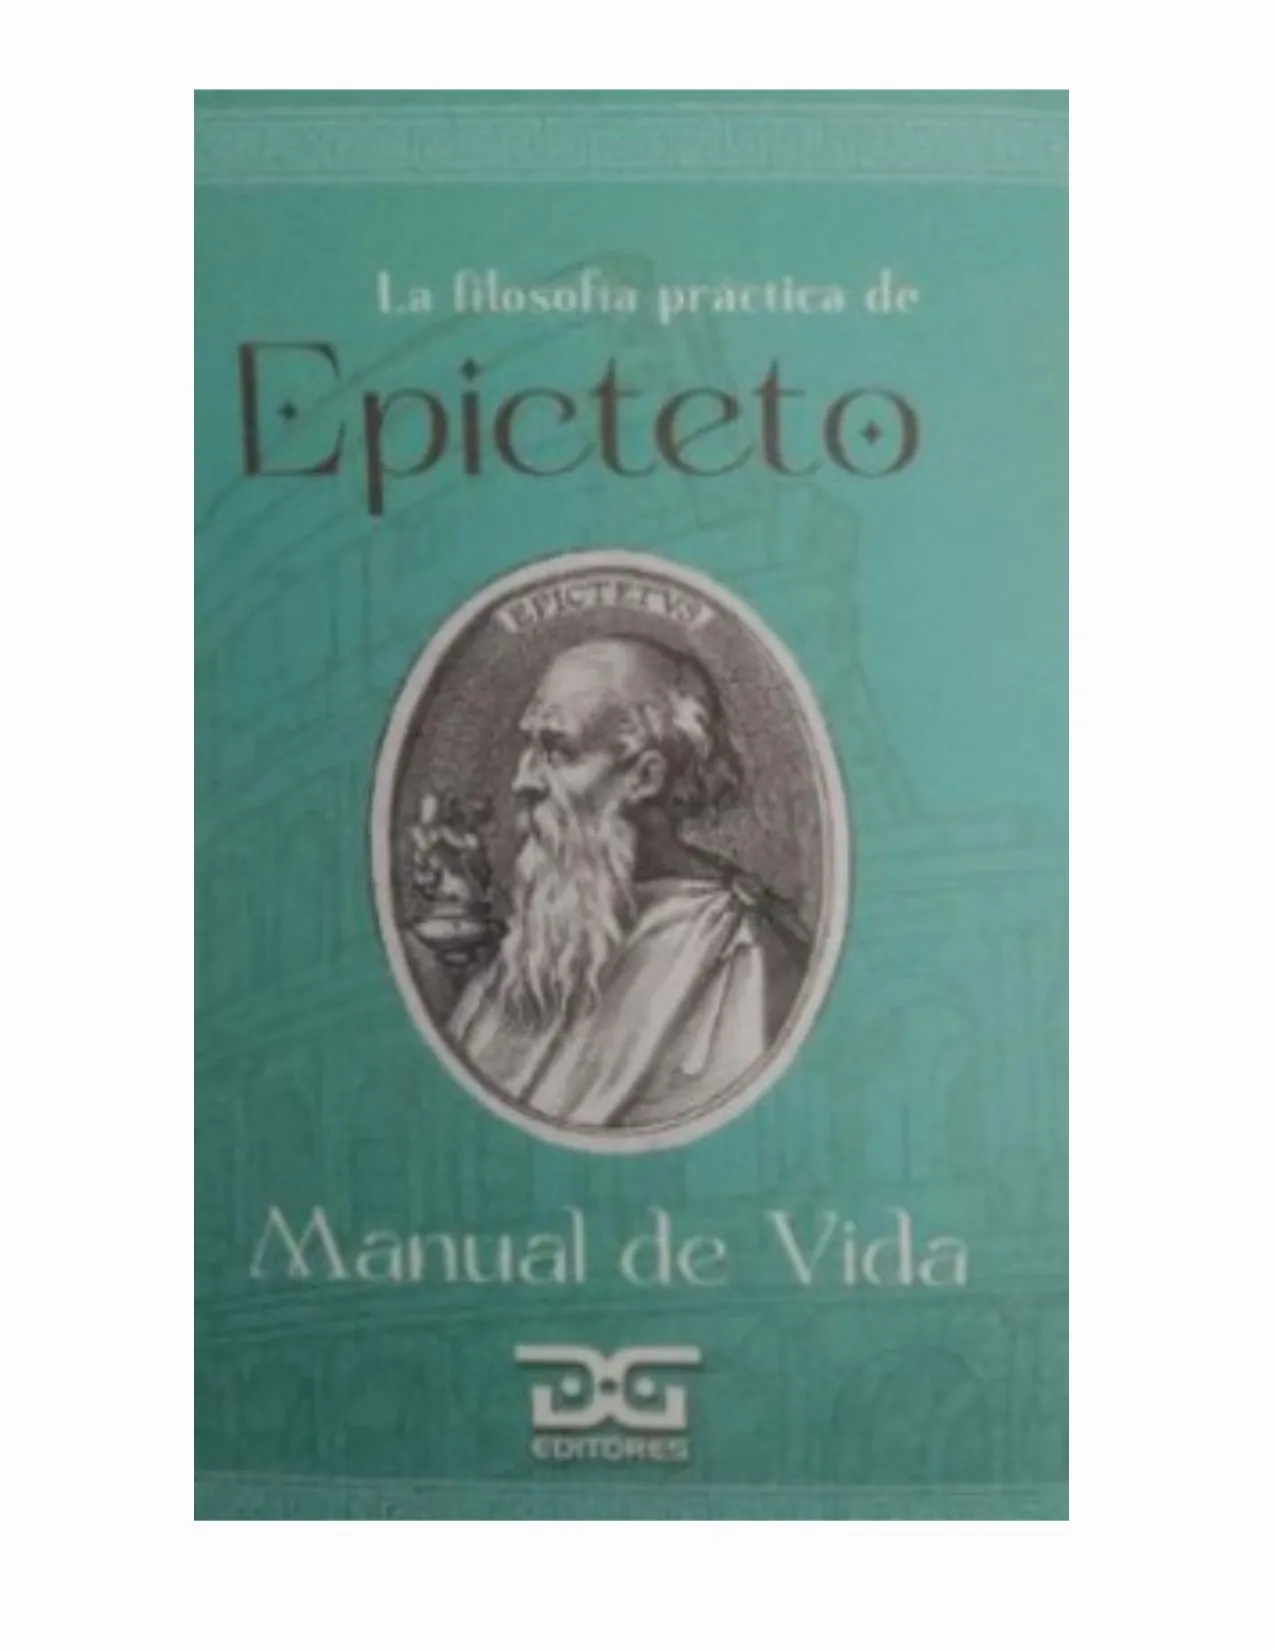 Epicteto Manual De Vida DyG